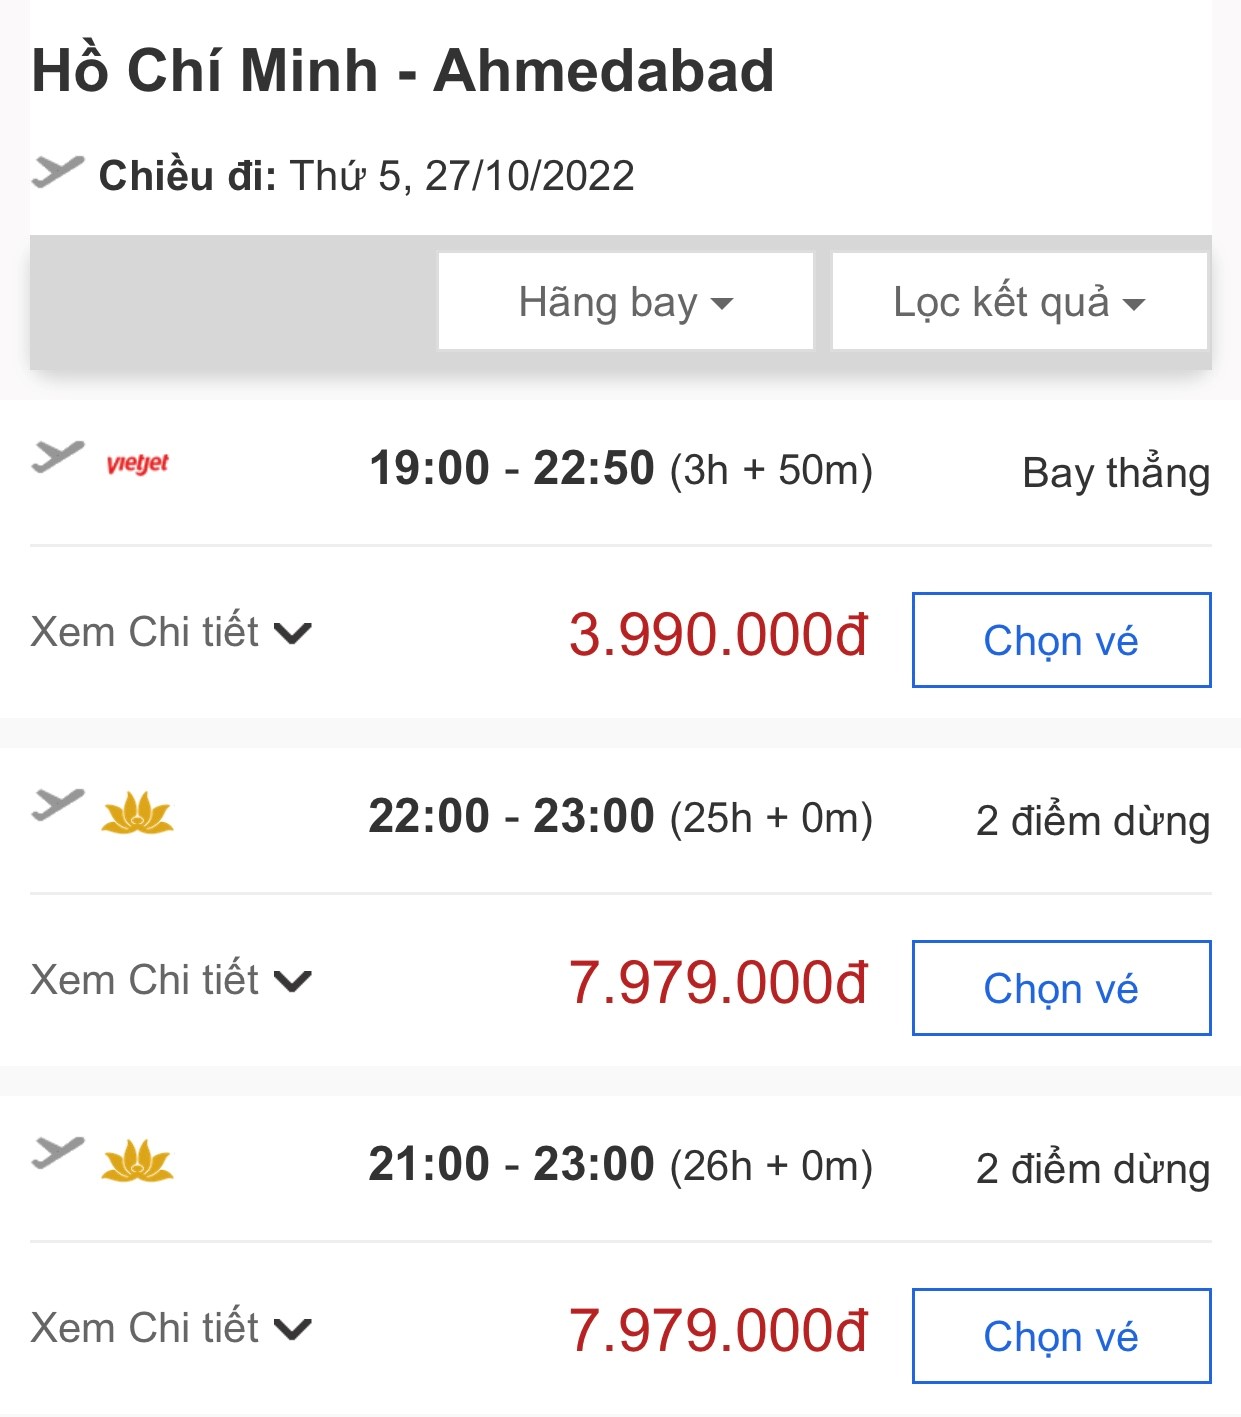 Thời gian bay từ Hồ Chí Minh đến Ahmedabad